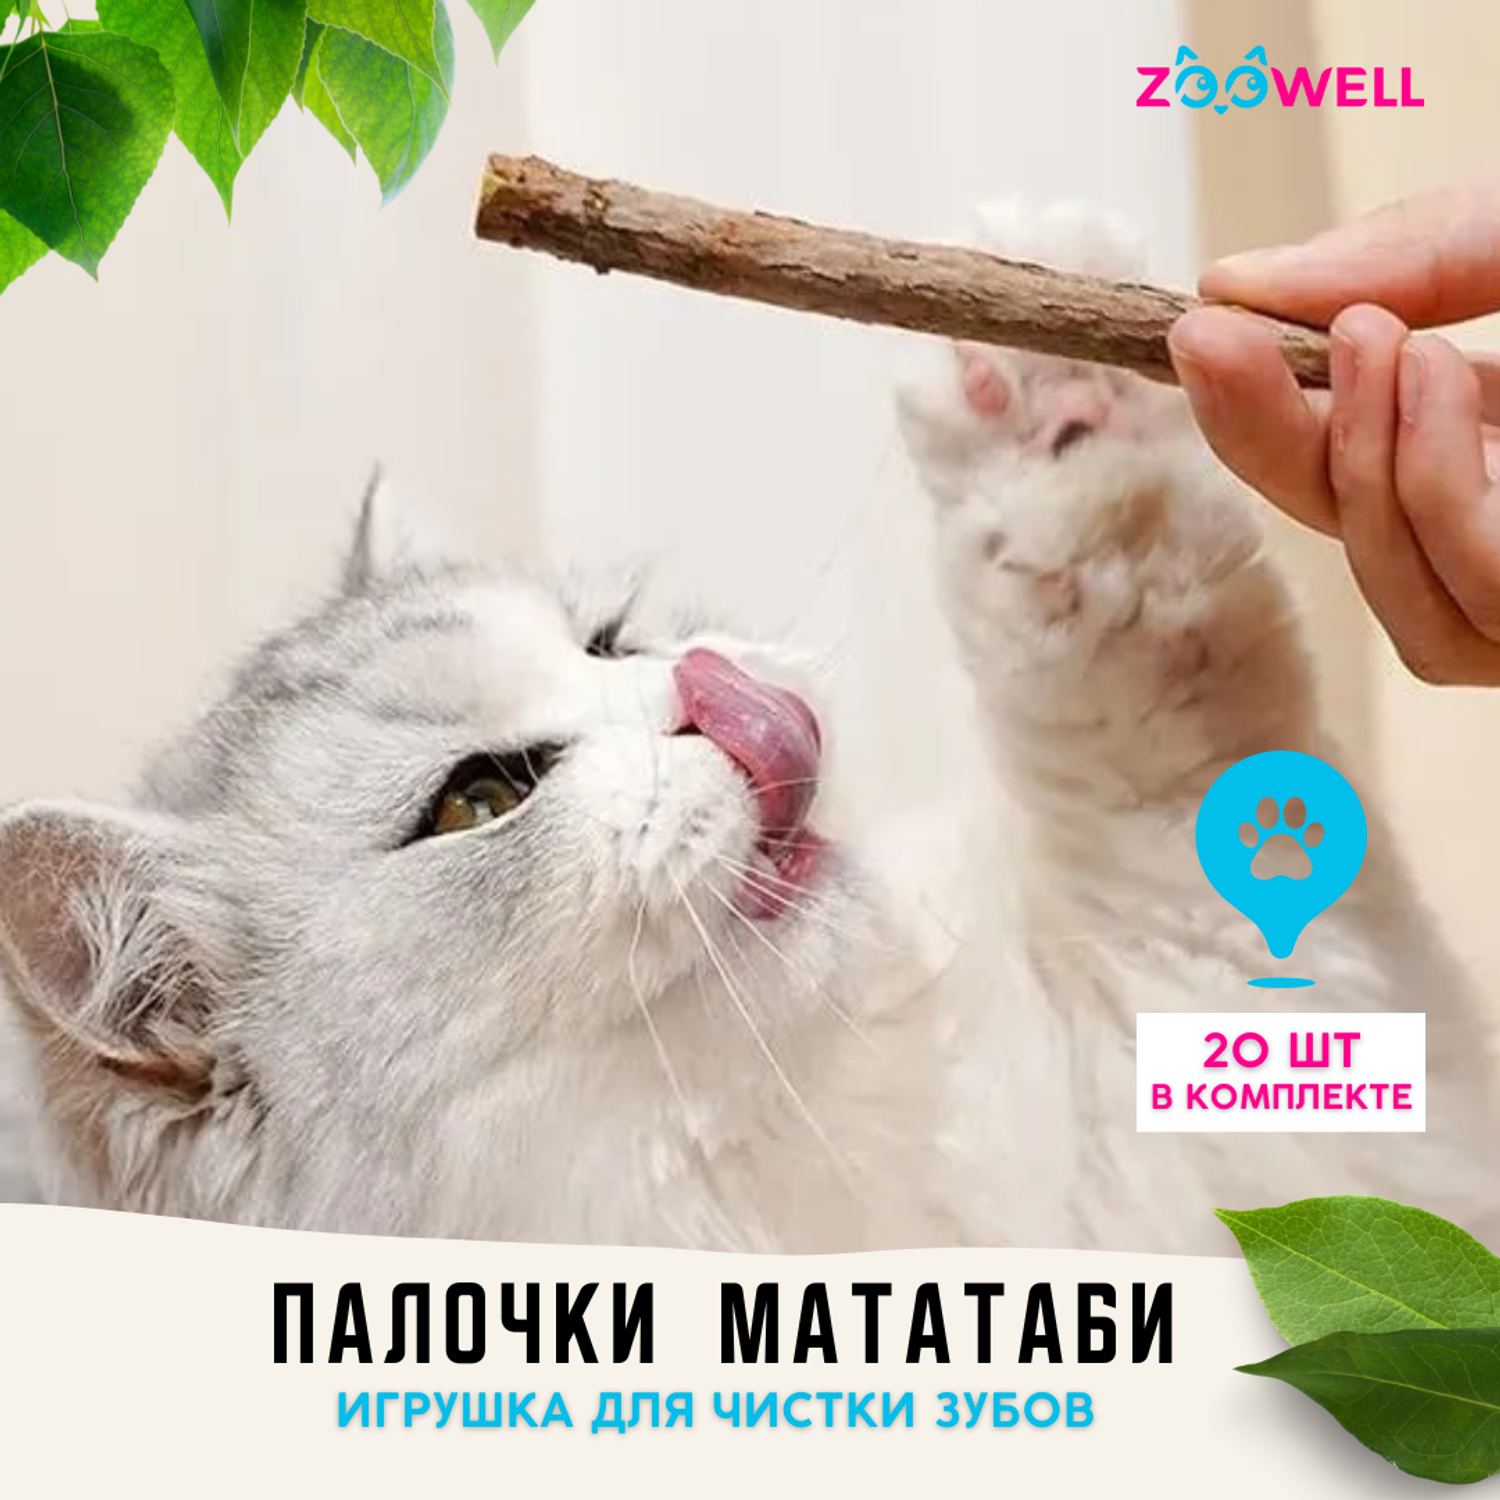 Игрушка для кошек ZDK ZooWell палочки Мататаби Actinidia polygama с эффектом кошачьей мяты для чистки зубов 20шт - фото 2